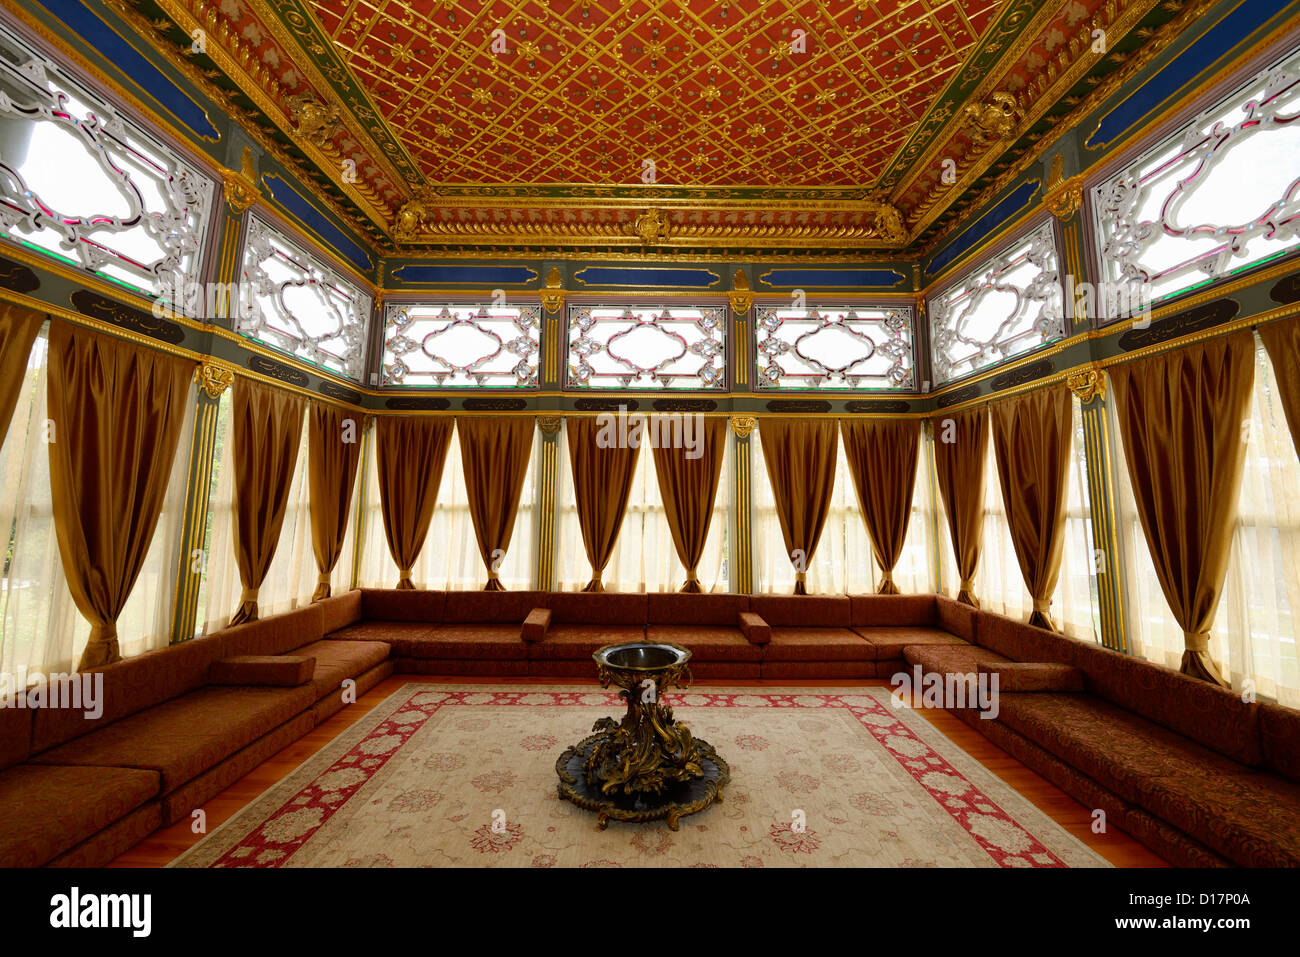 Intérieur de la terrasse en bois, kiosque belvedere structure au palais de topkapi Istanbul TURQUIE Banque D'Images